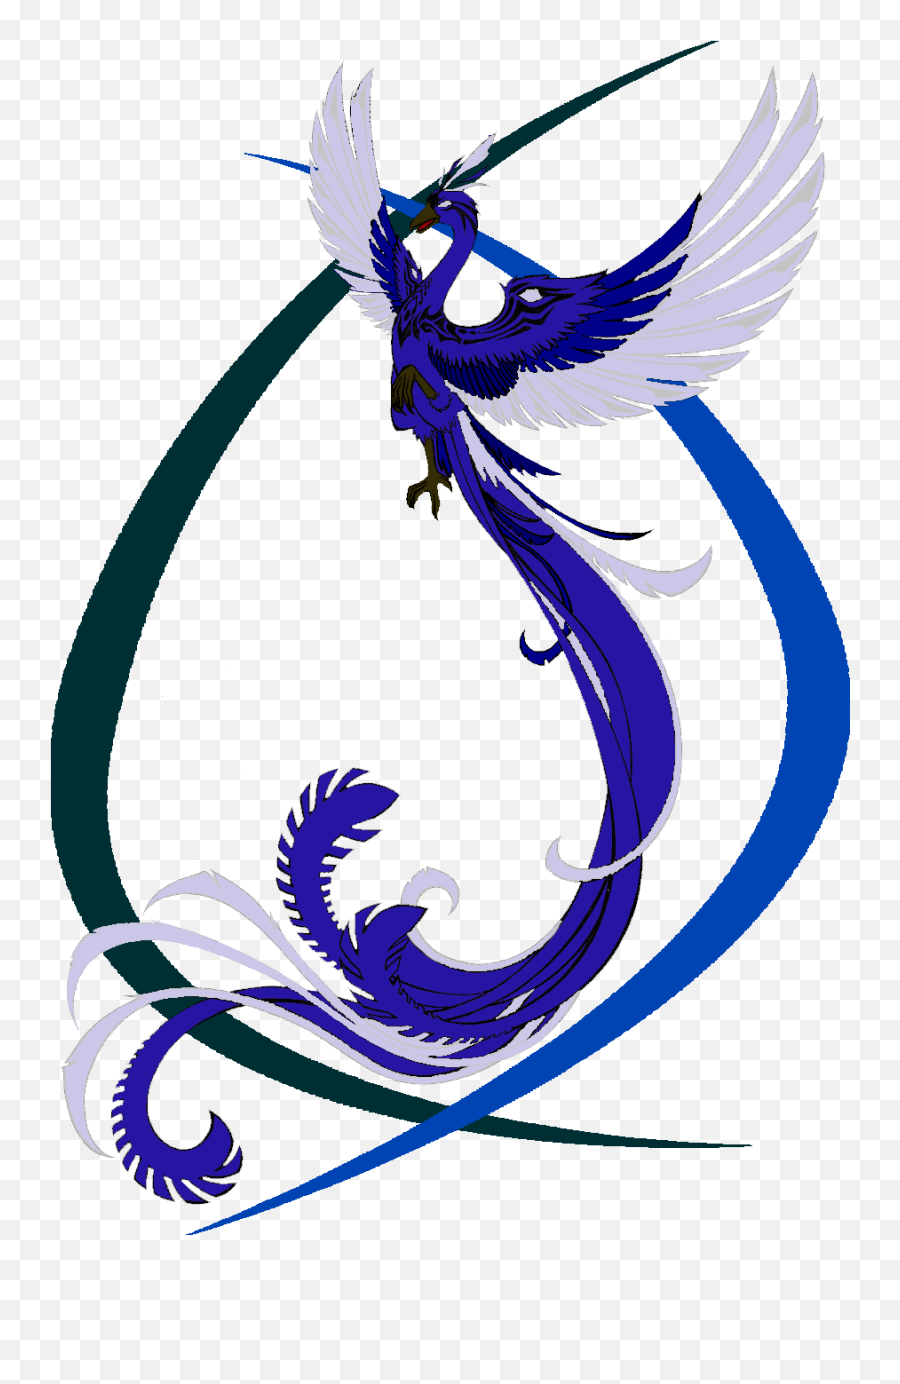 Download Blue Phoenix Transparent Background Hq Png Image - Blue Phoenix Transparent Background Emoji,B Emoji No Background